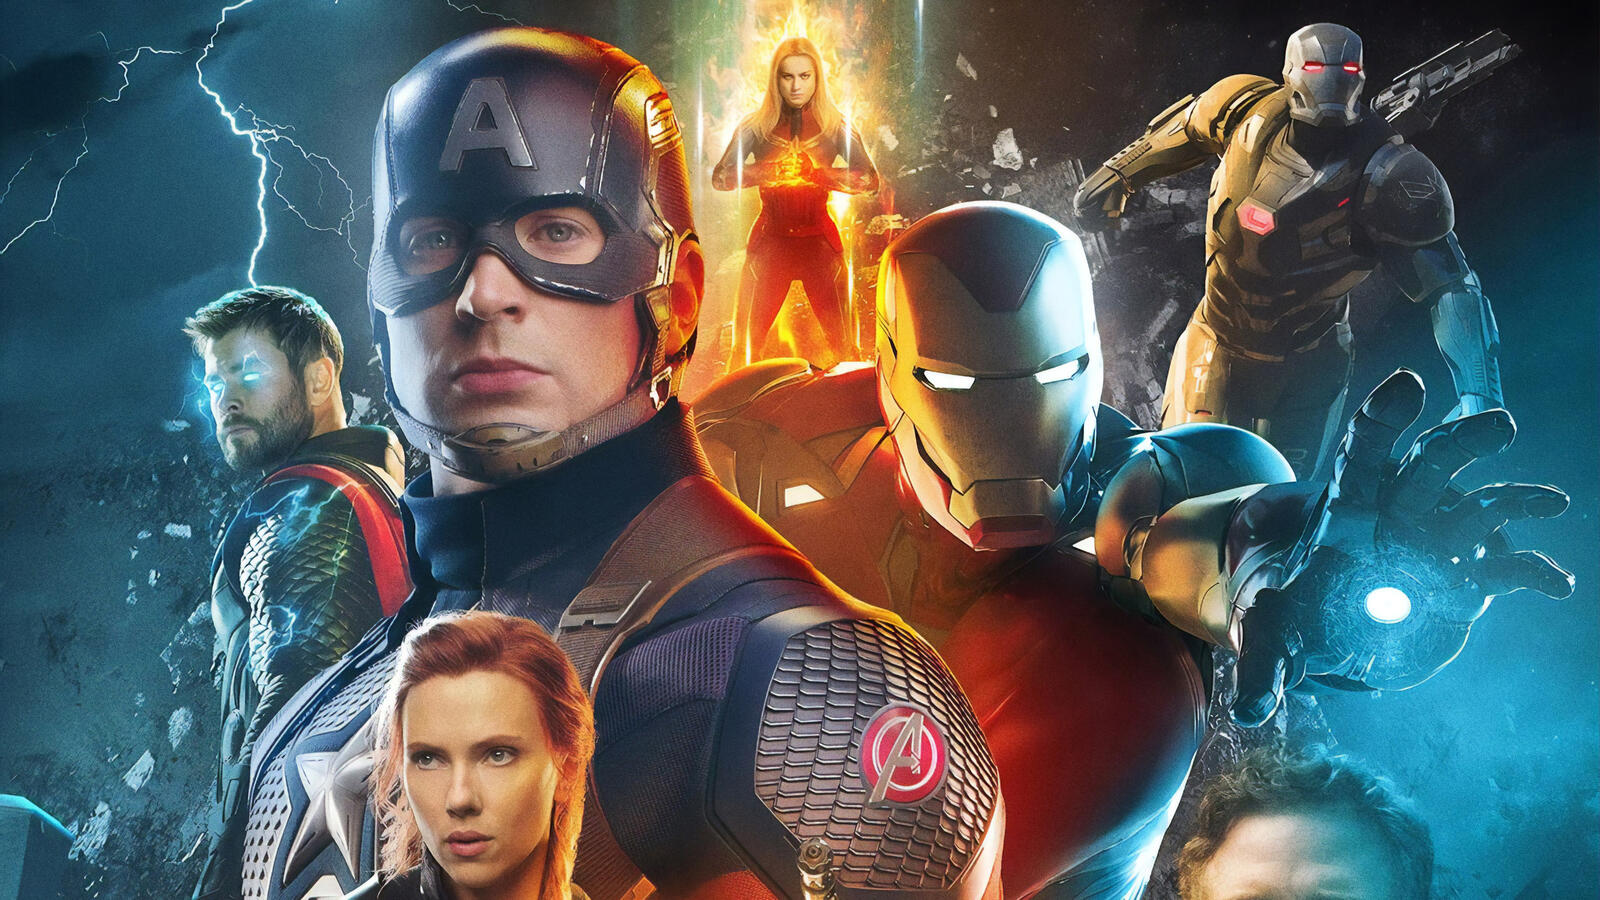 Wallpapers poster face Avengers Endgame on the desktop